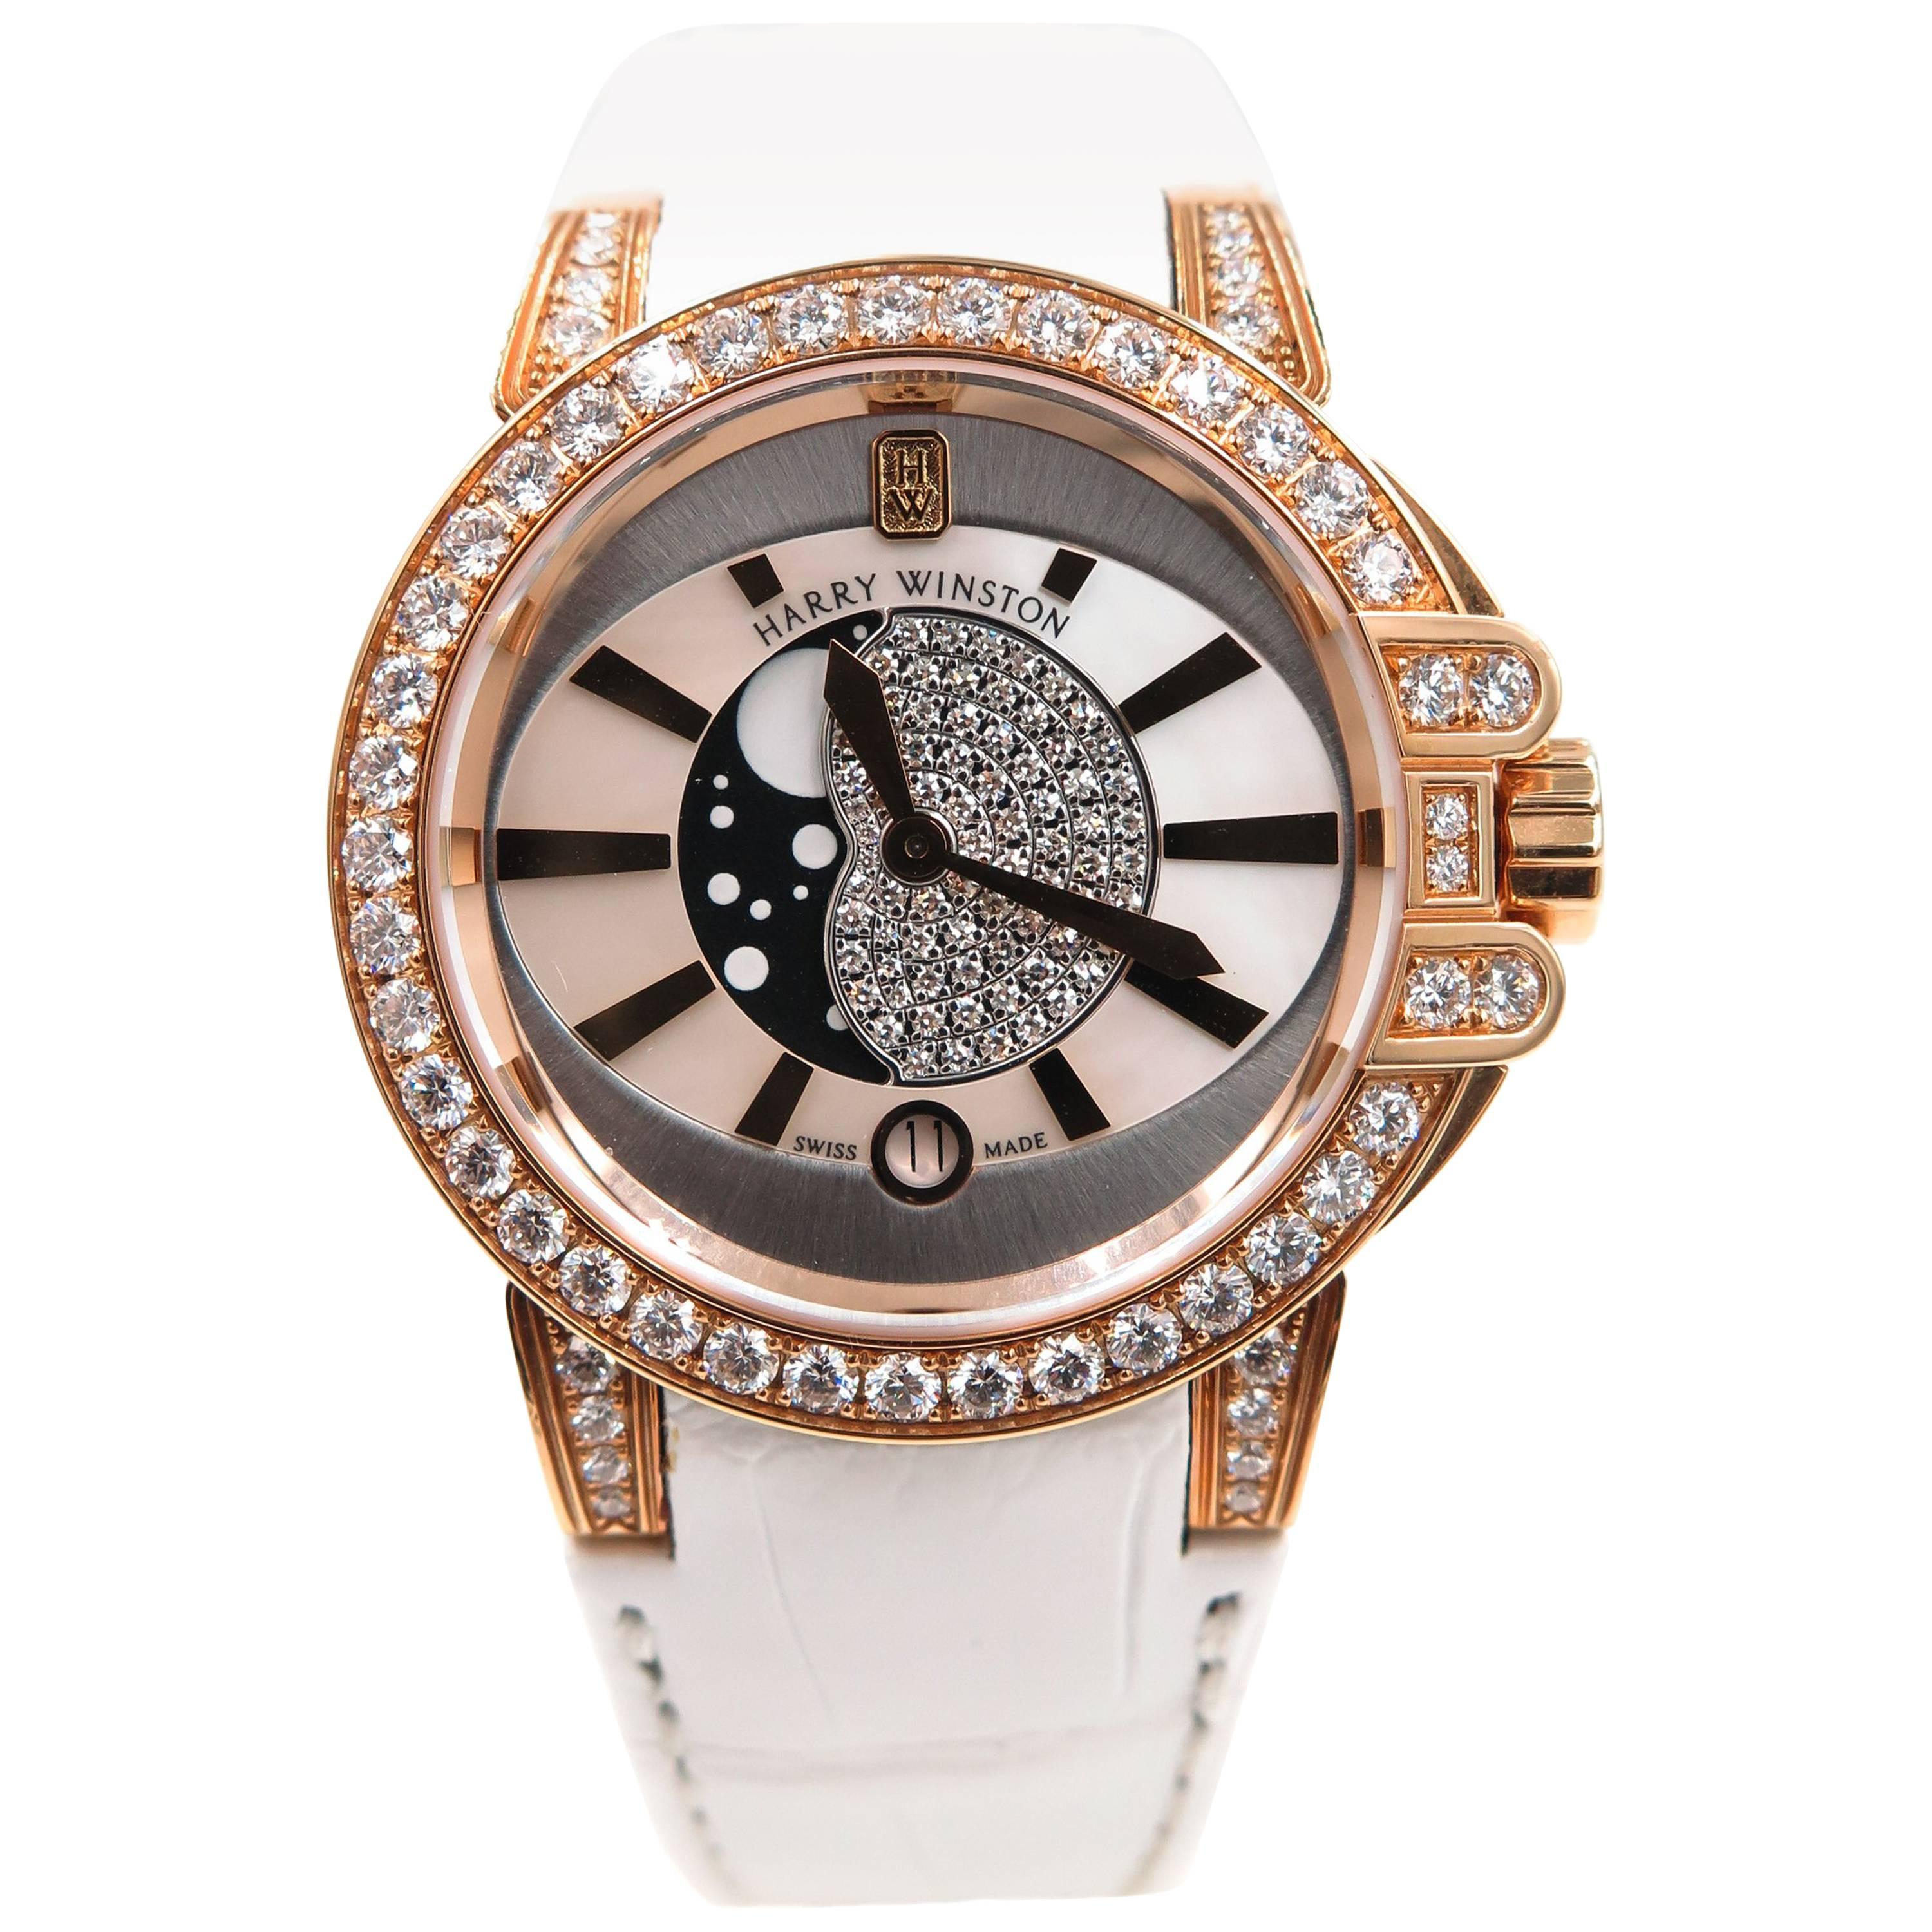 Harry Winston Ladies Rose Gold Ocean Quartz Wristwatch